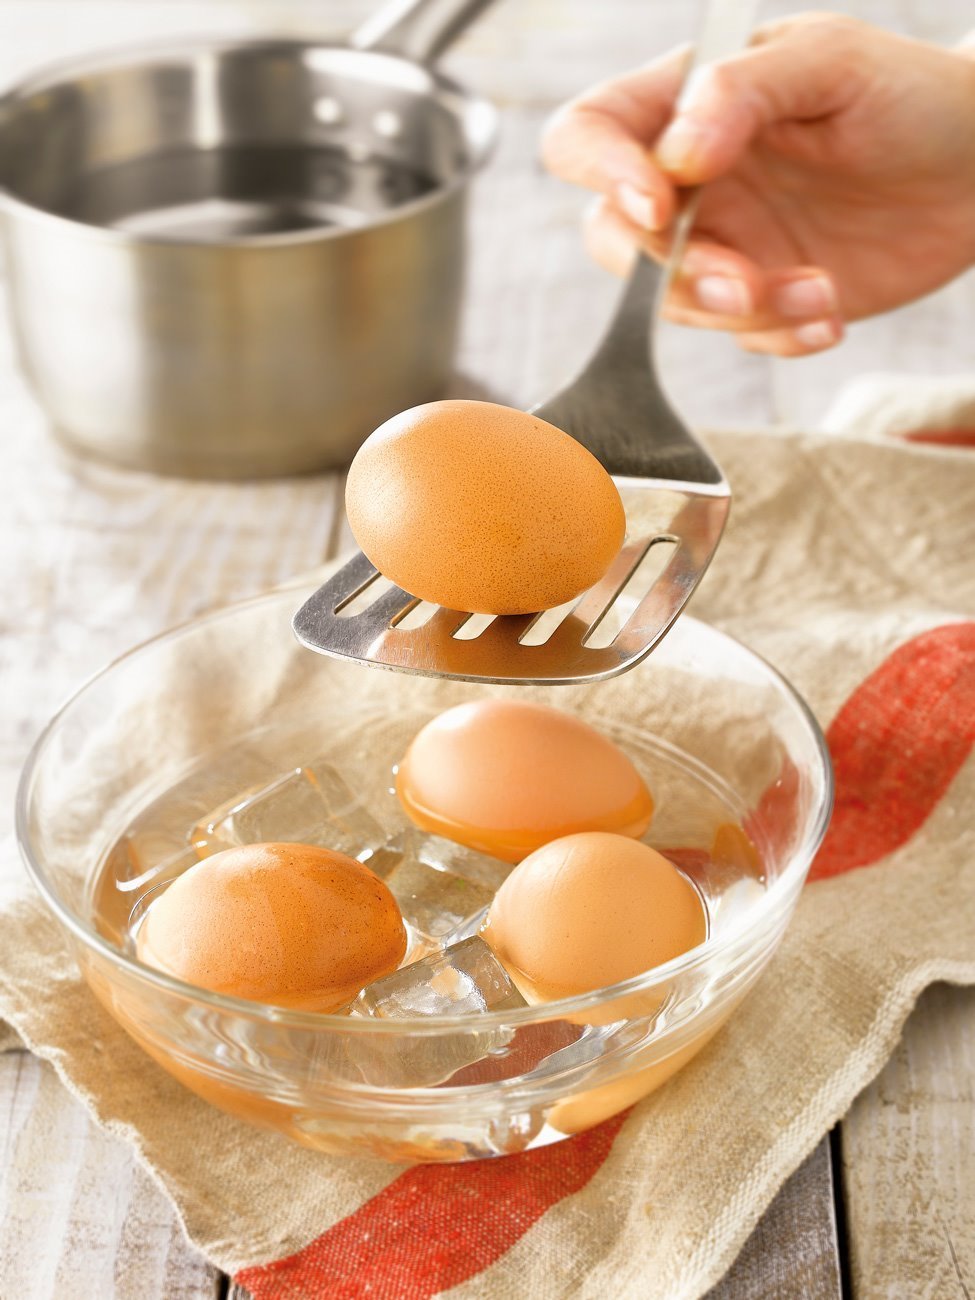 1. Cuece los huevos y refréscalos